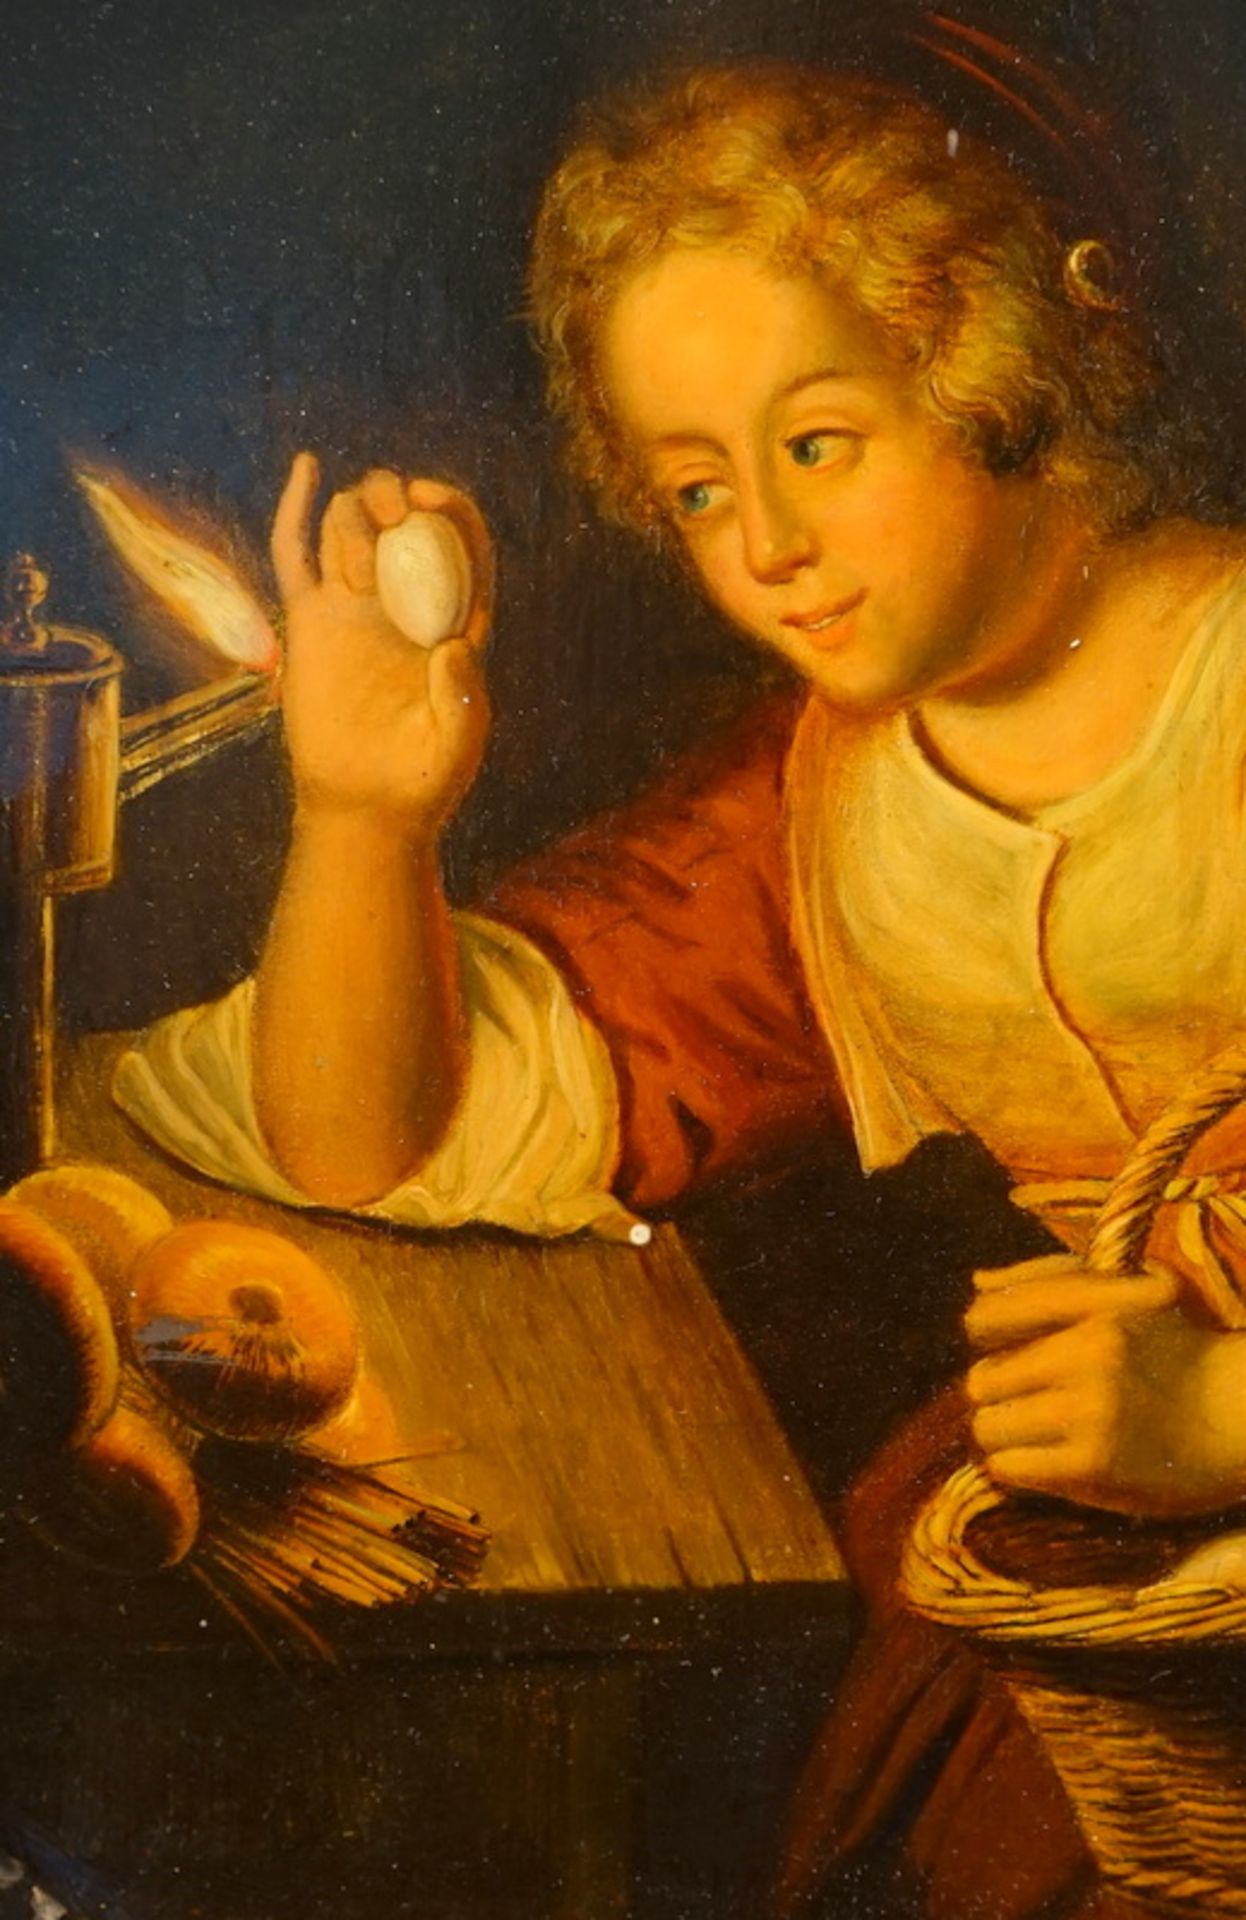 Stobwasser Lackwarenmanufaktur Braunschweig: Junge Frau beim nächtlichem Examinieren von Eiern - Bild 2 aus 3